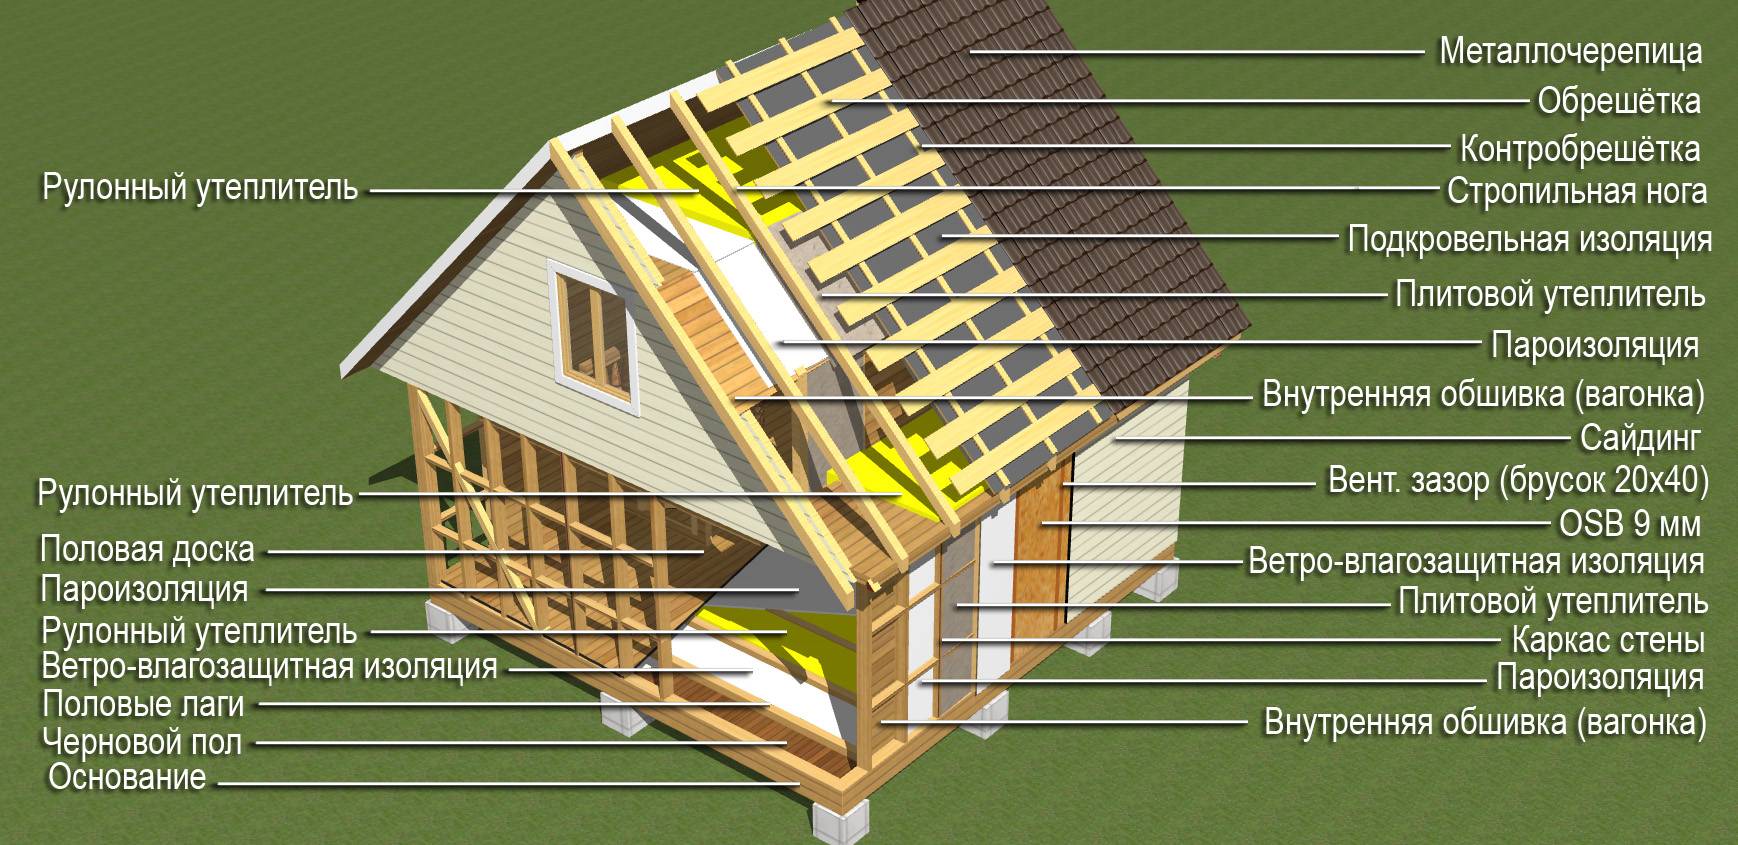 Строительство дома из бруса - пошаговое руководство и распространенные ошибки (фото и видео)